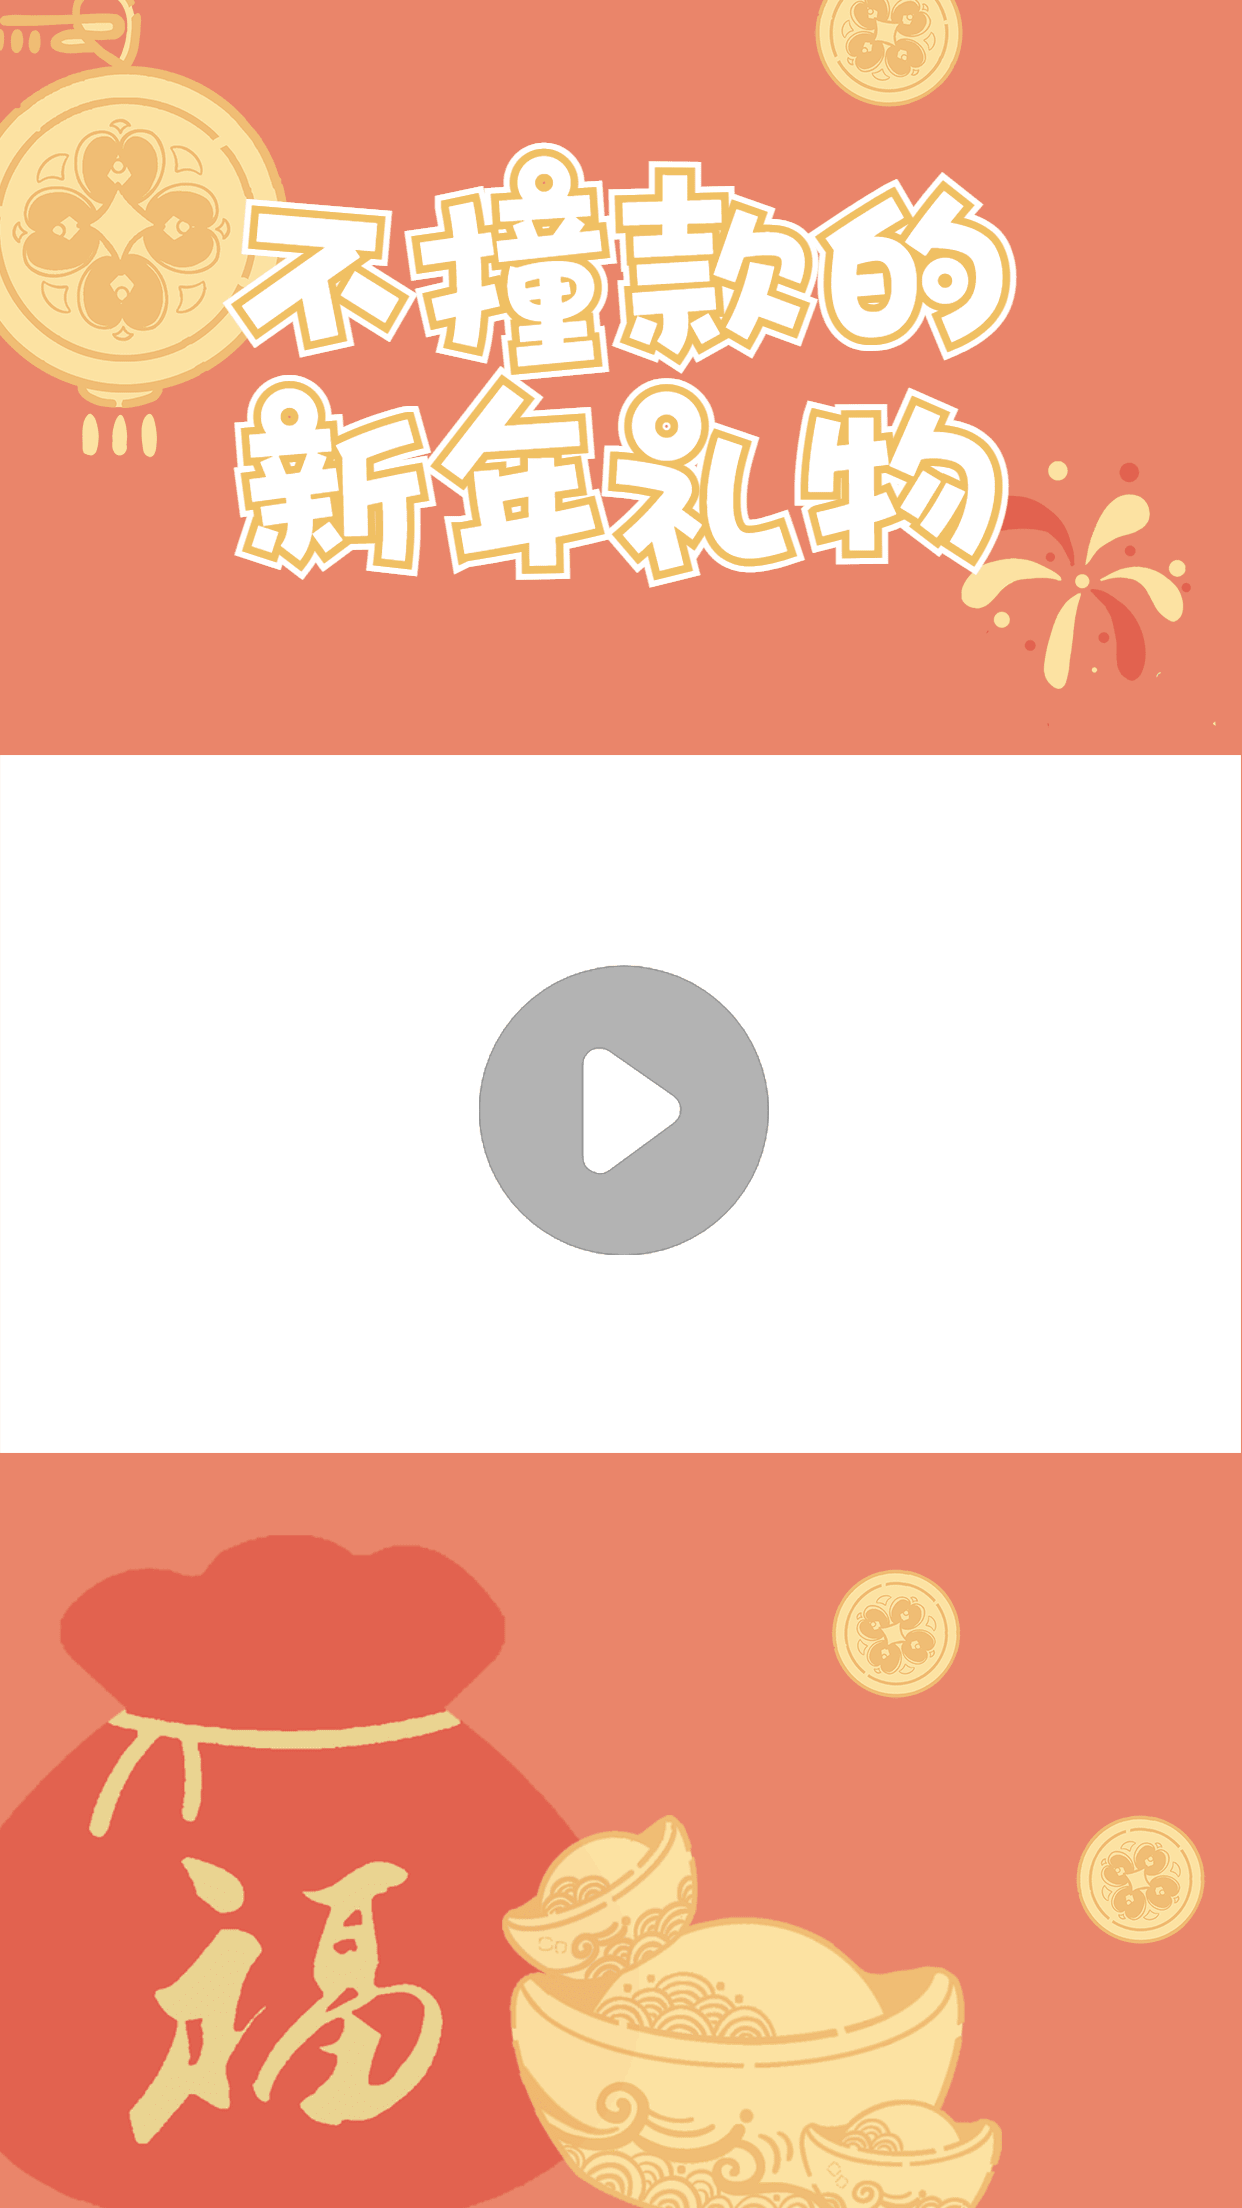 可爱喜庆春节礼物分享视频边框预览效果